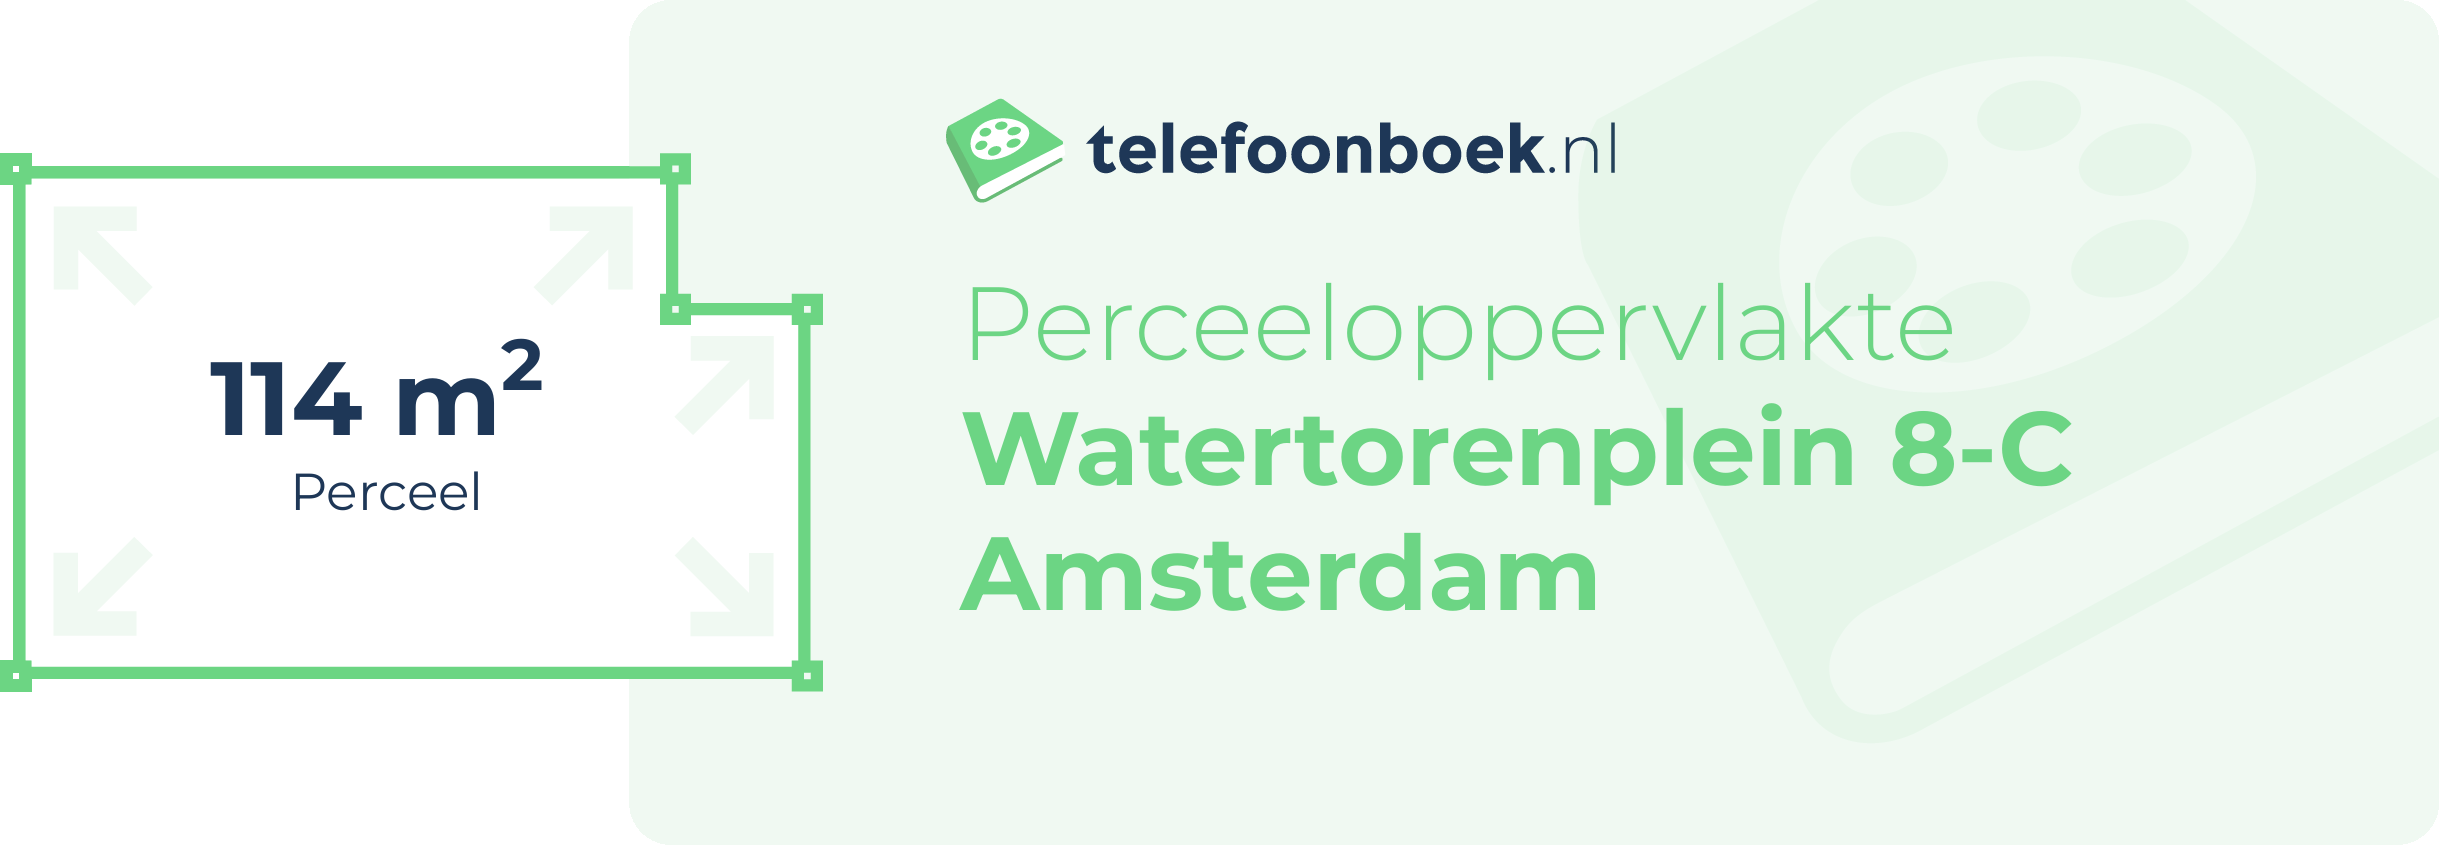 Perceeloppervlakte Watertorenplein 8-C Amsterdam